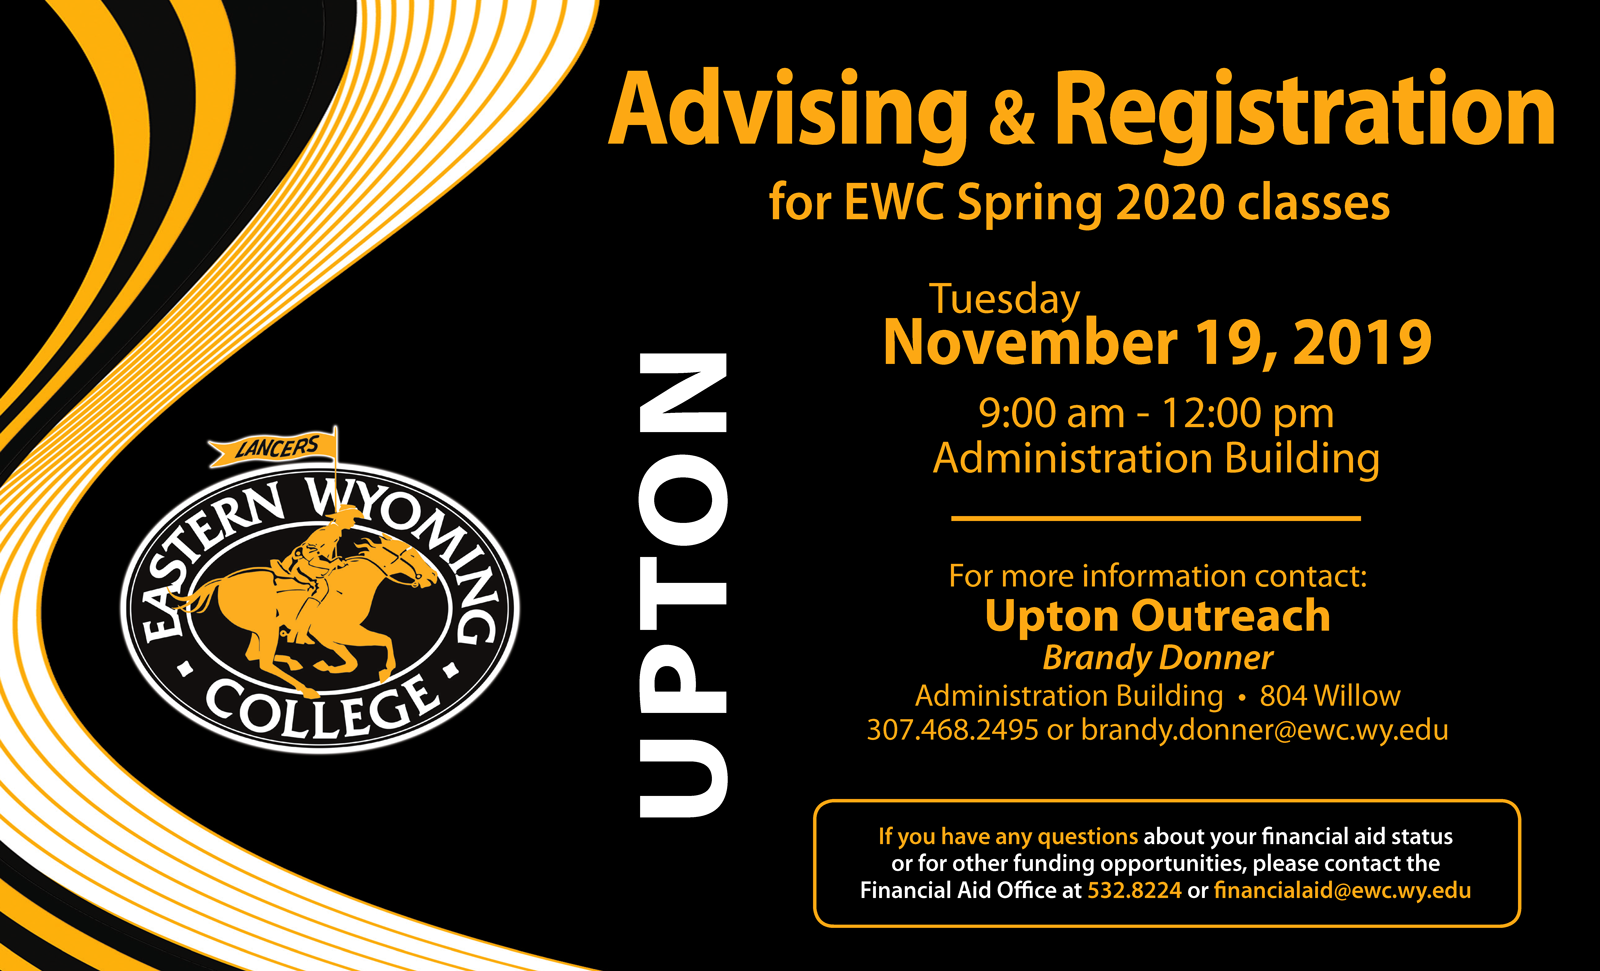 Upton Outreach - Advising & Registration for Spring 2020